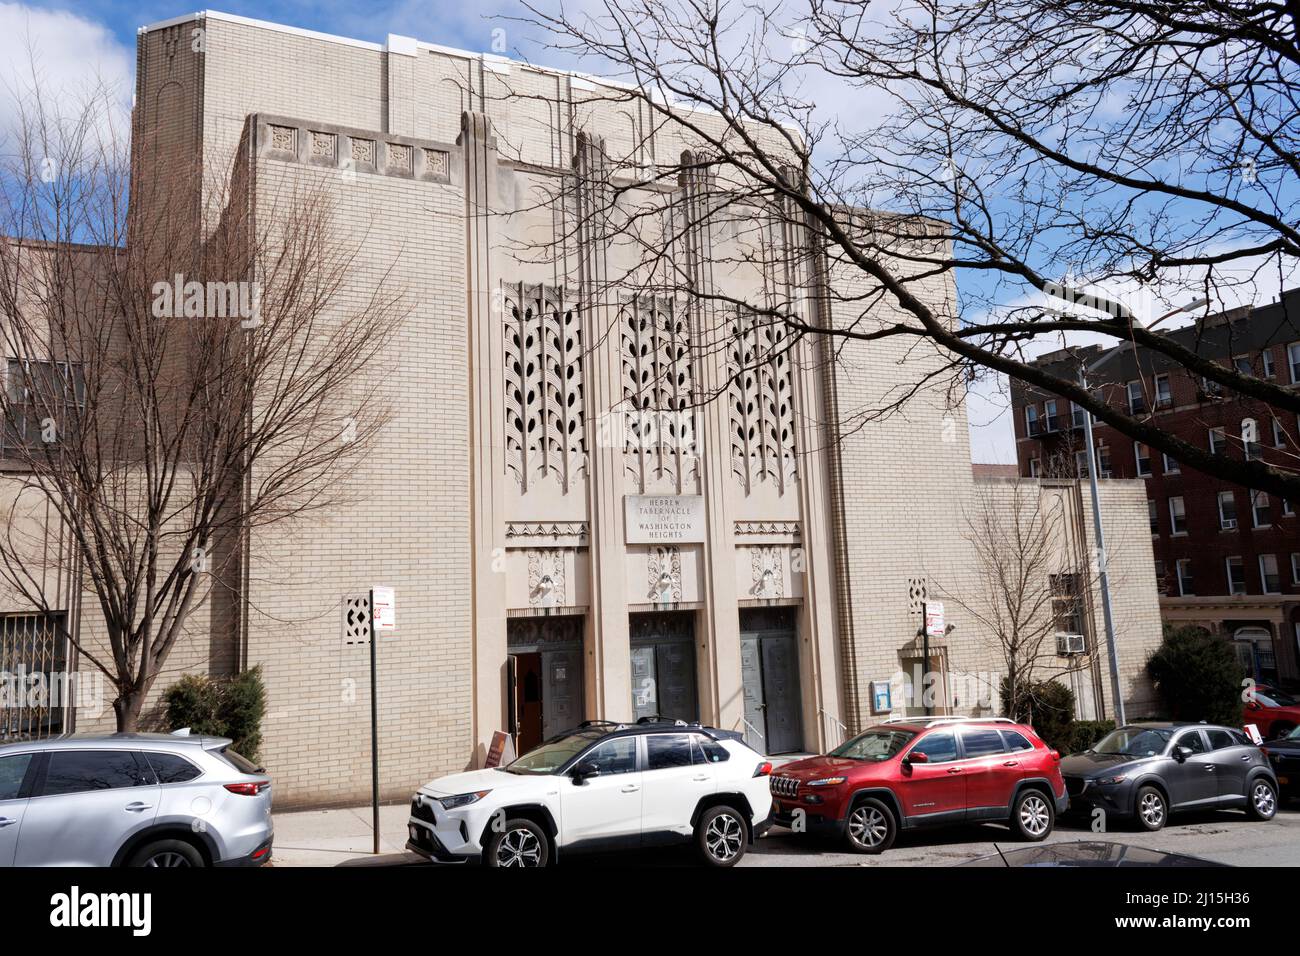 Das hebräische Tabernakel von Washington Heights, eine reformjüdische Gemeinde oder Synagoge in Northern Manhattan, New York, wurde 1905 gegründet Stockfoto